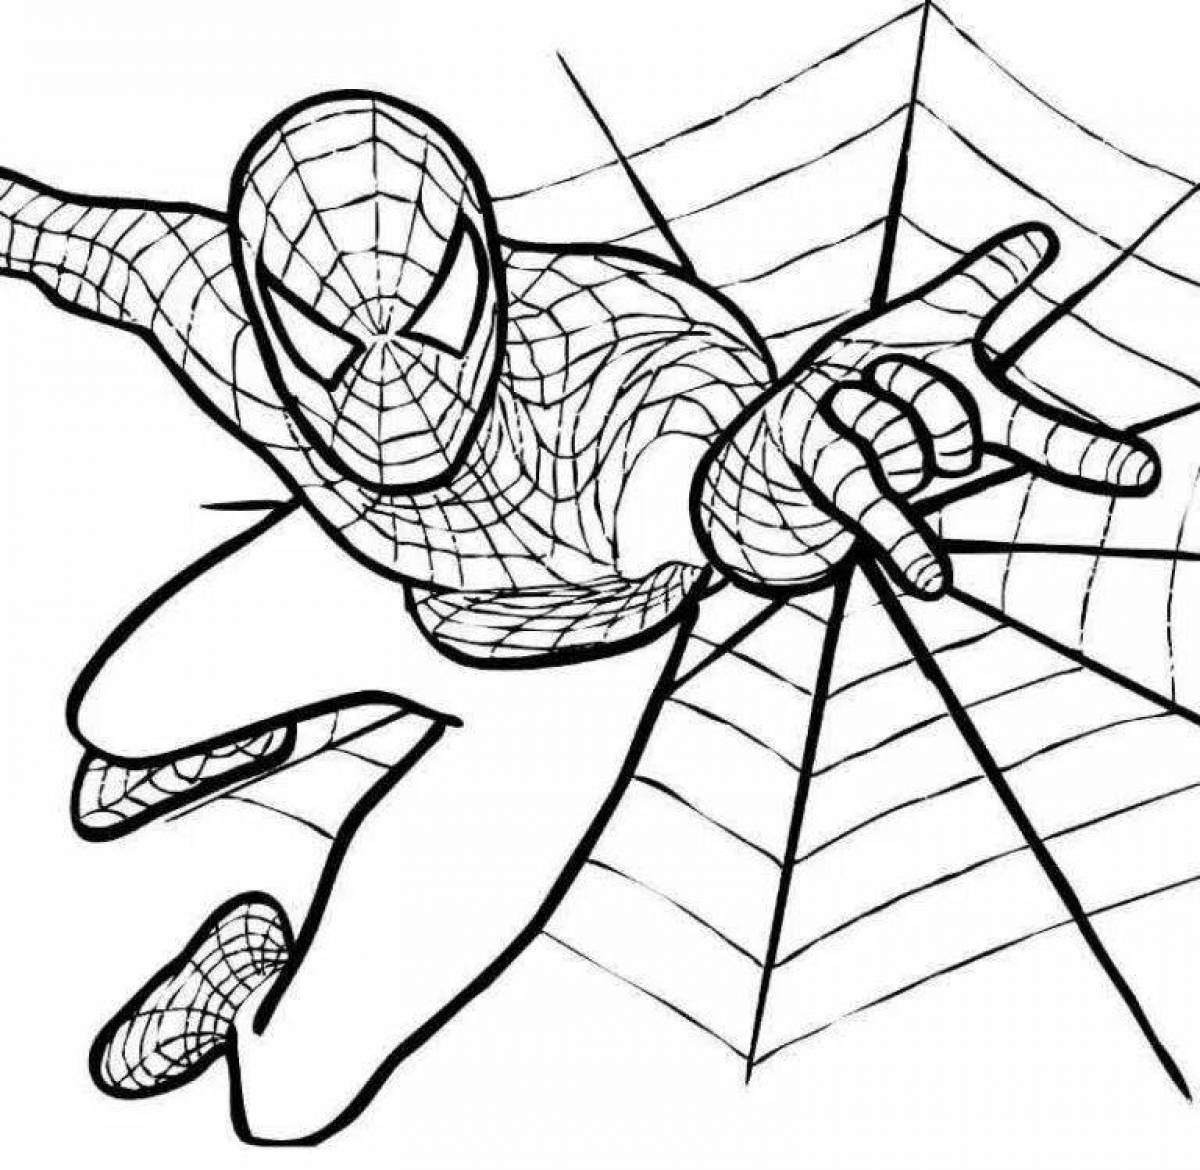 Увлекательная раскраска человека-паука для детей 5-6 лет